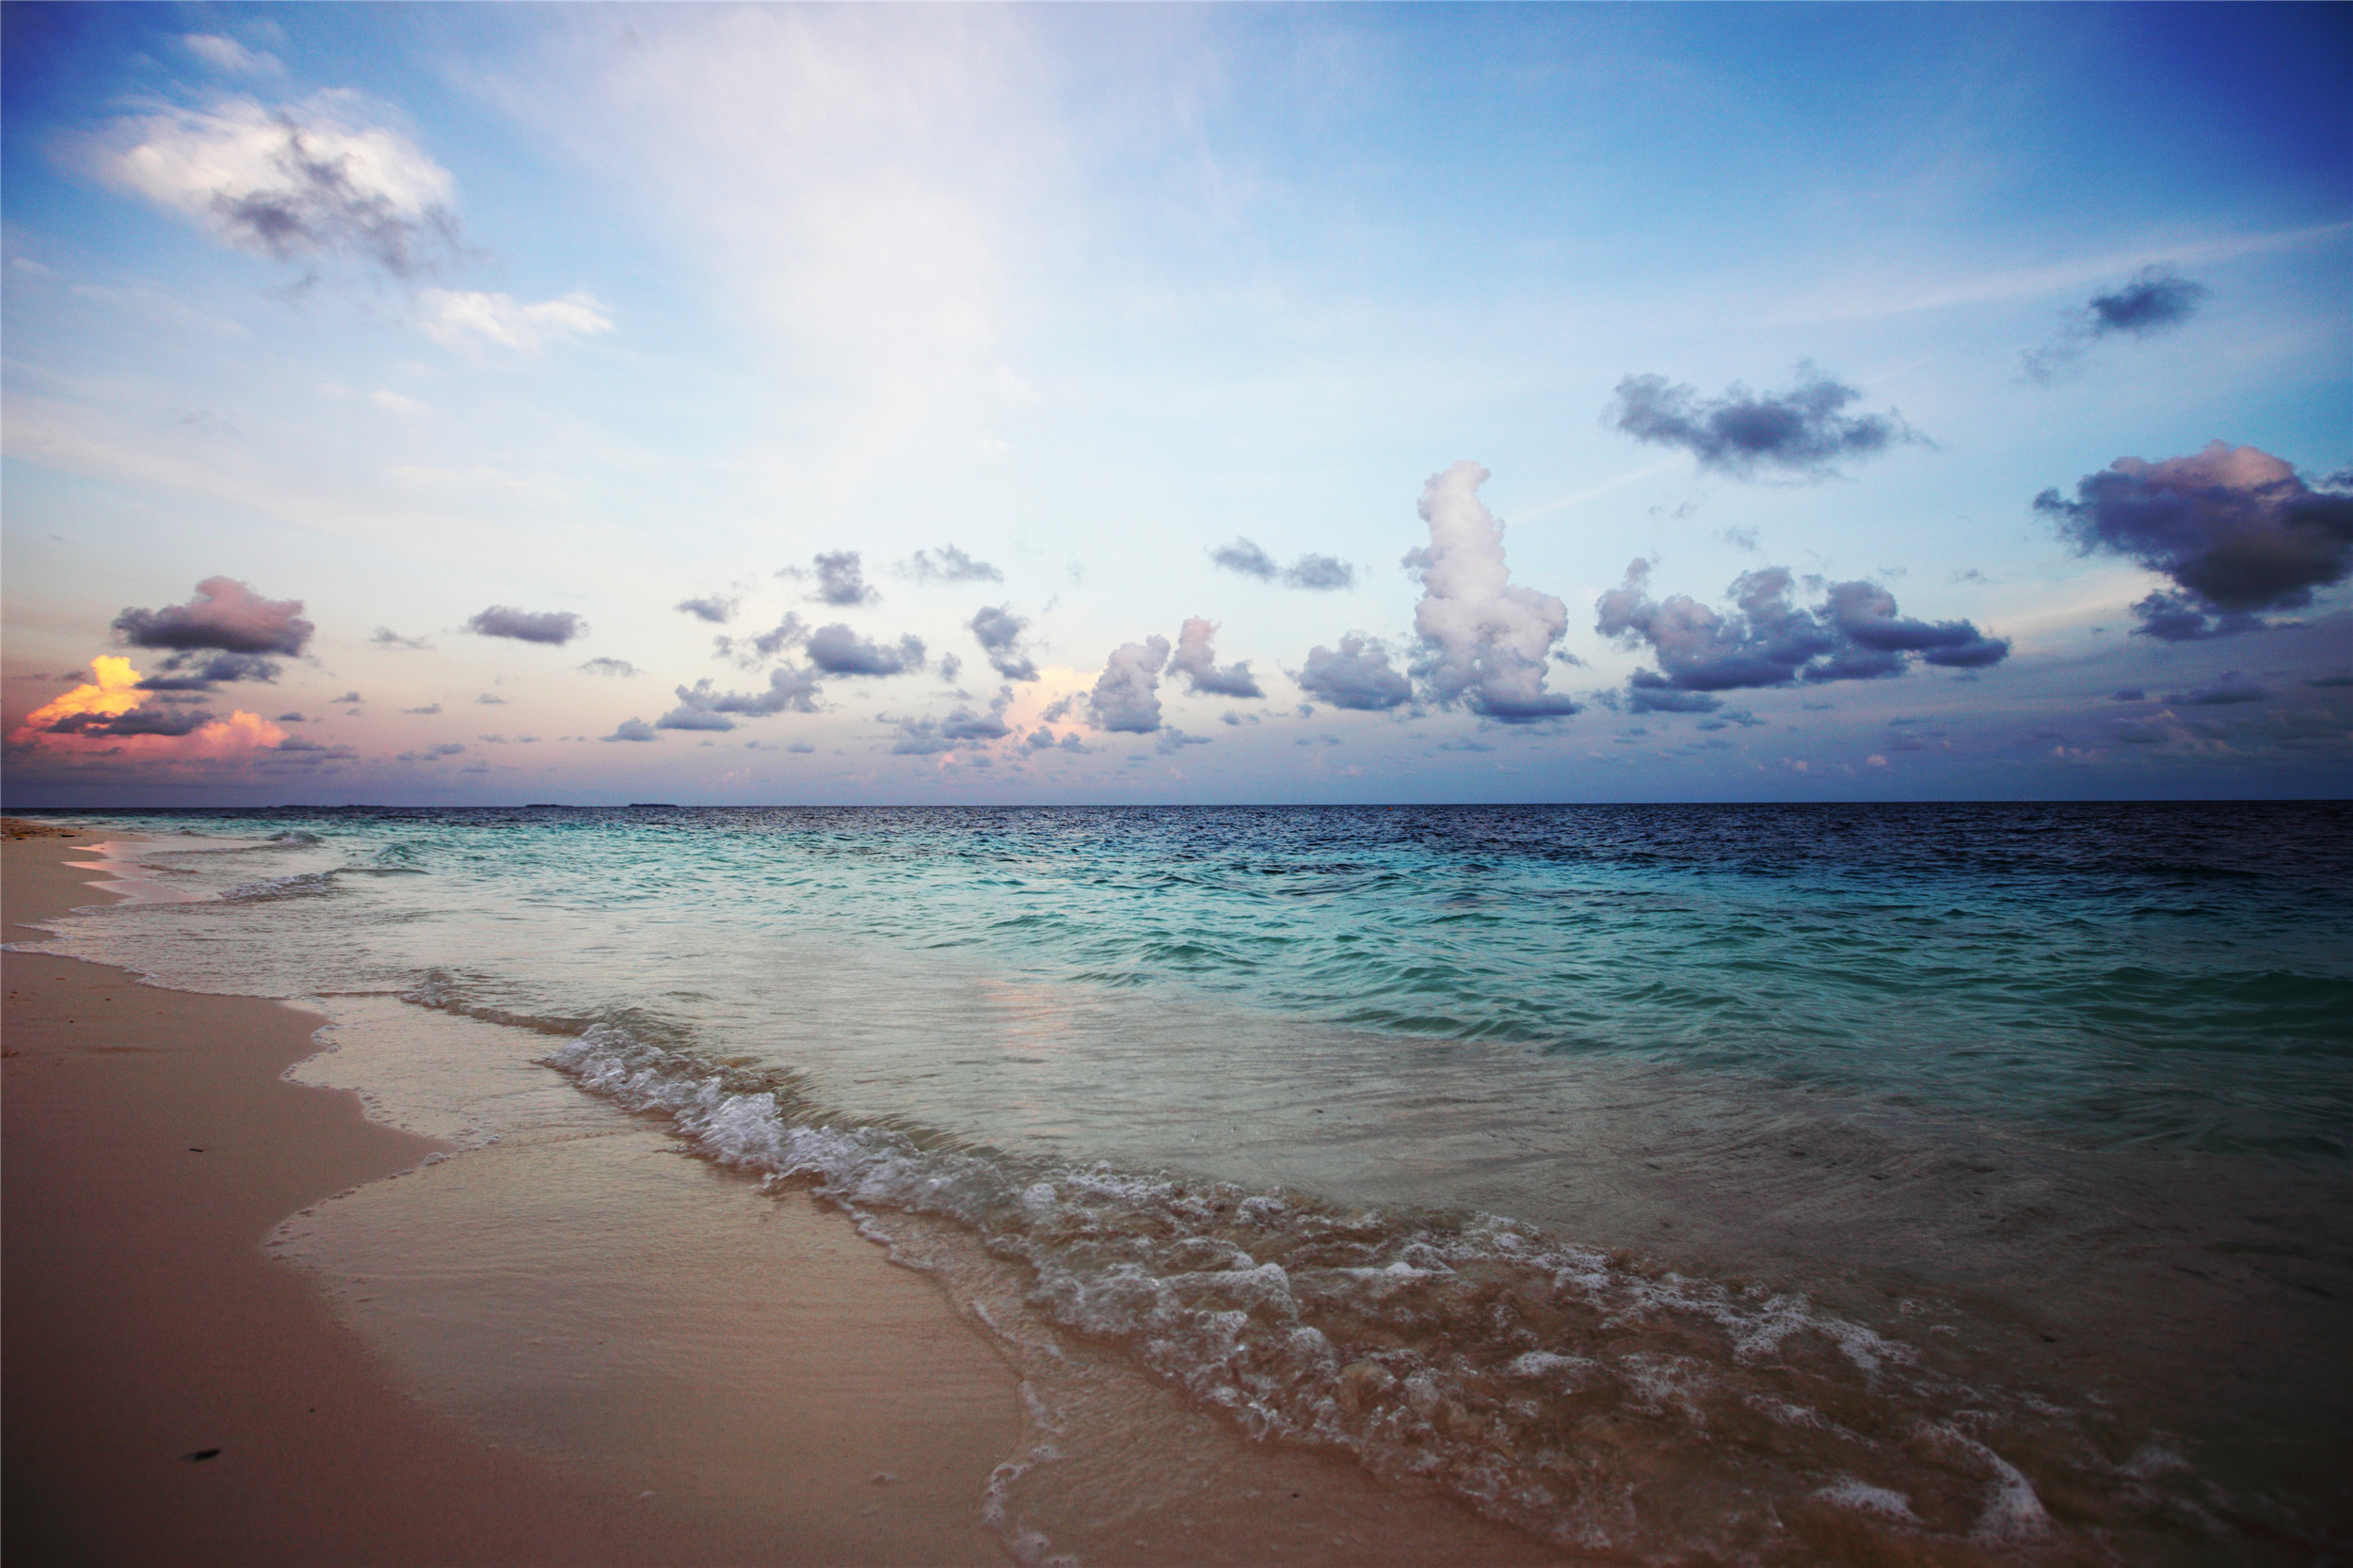 带你们欣赏六张美景图:白色浪花,清澈的海水,你还能看见什么?